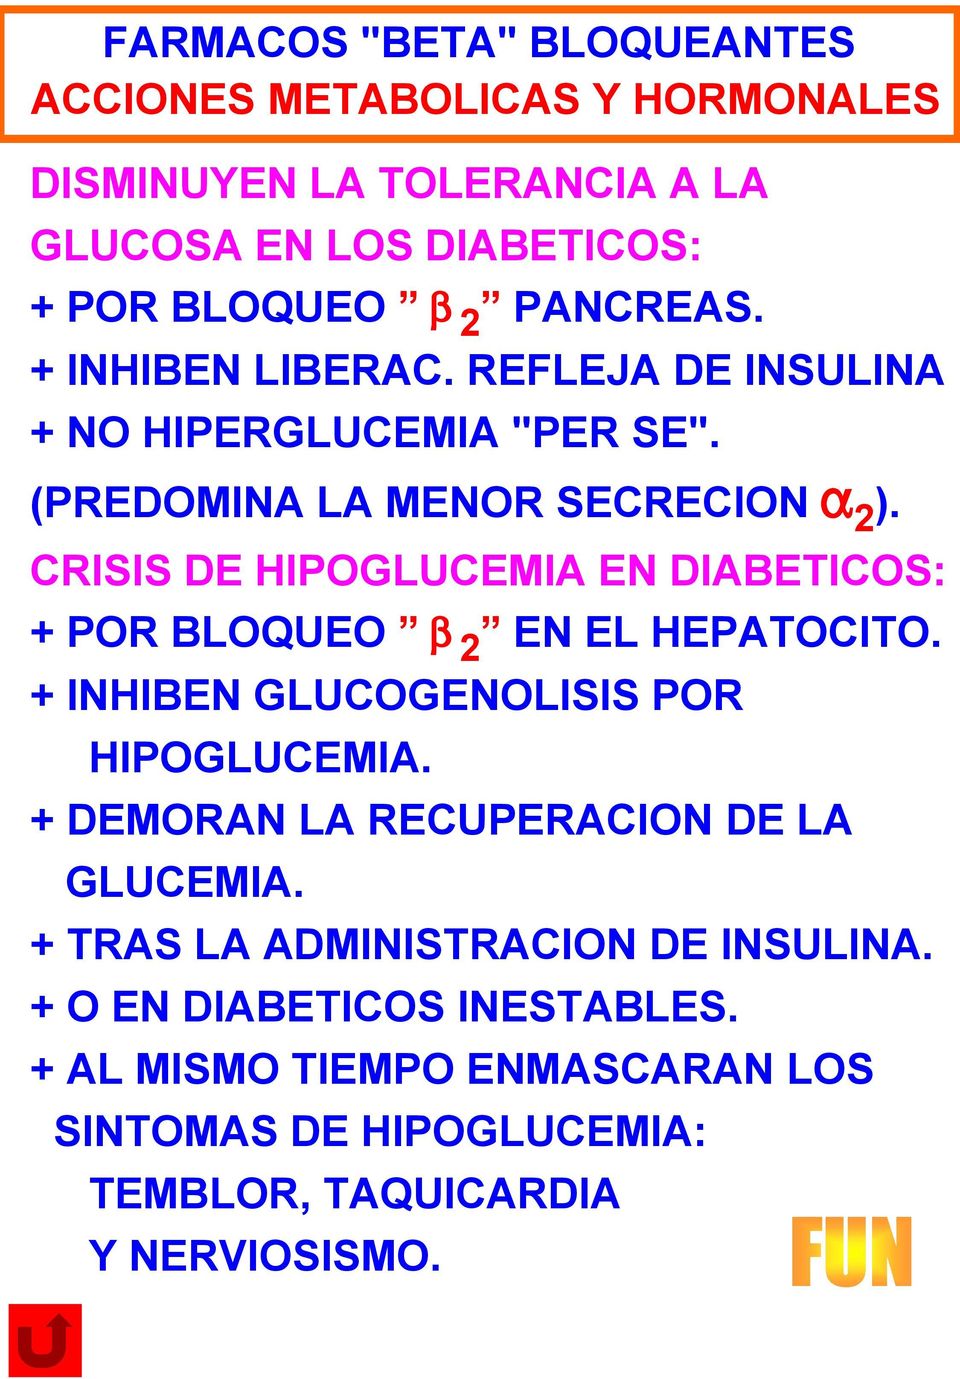 CRISIS DE HIPOGLUCEMIA EN DIABETICOS: + POR BLOQUEO b 2 EN EL HEPATOCITO. + INHIBEN GLUCOGENOLISIS POR HIPOGLUCEMIA.